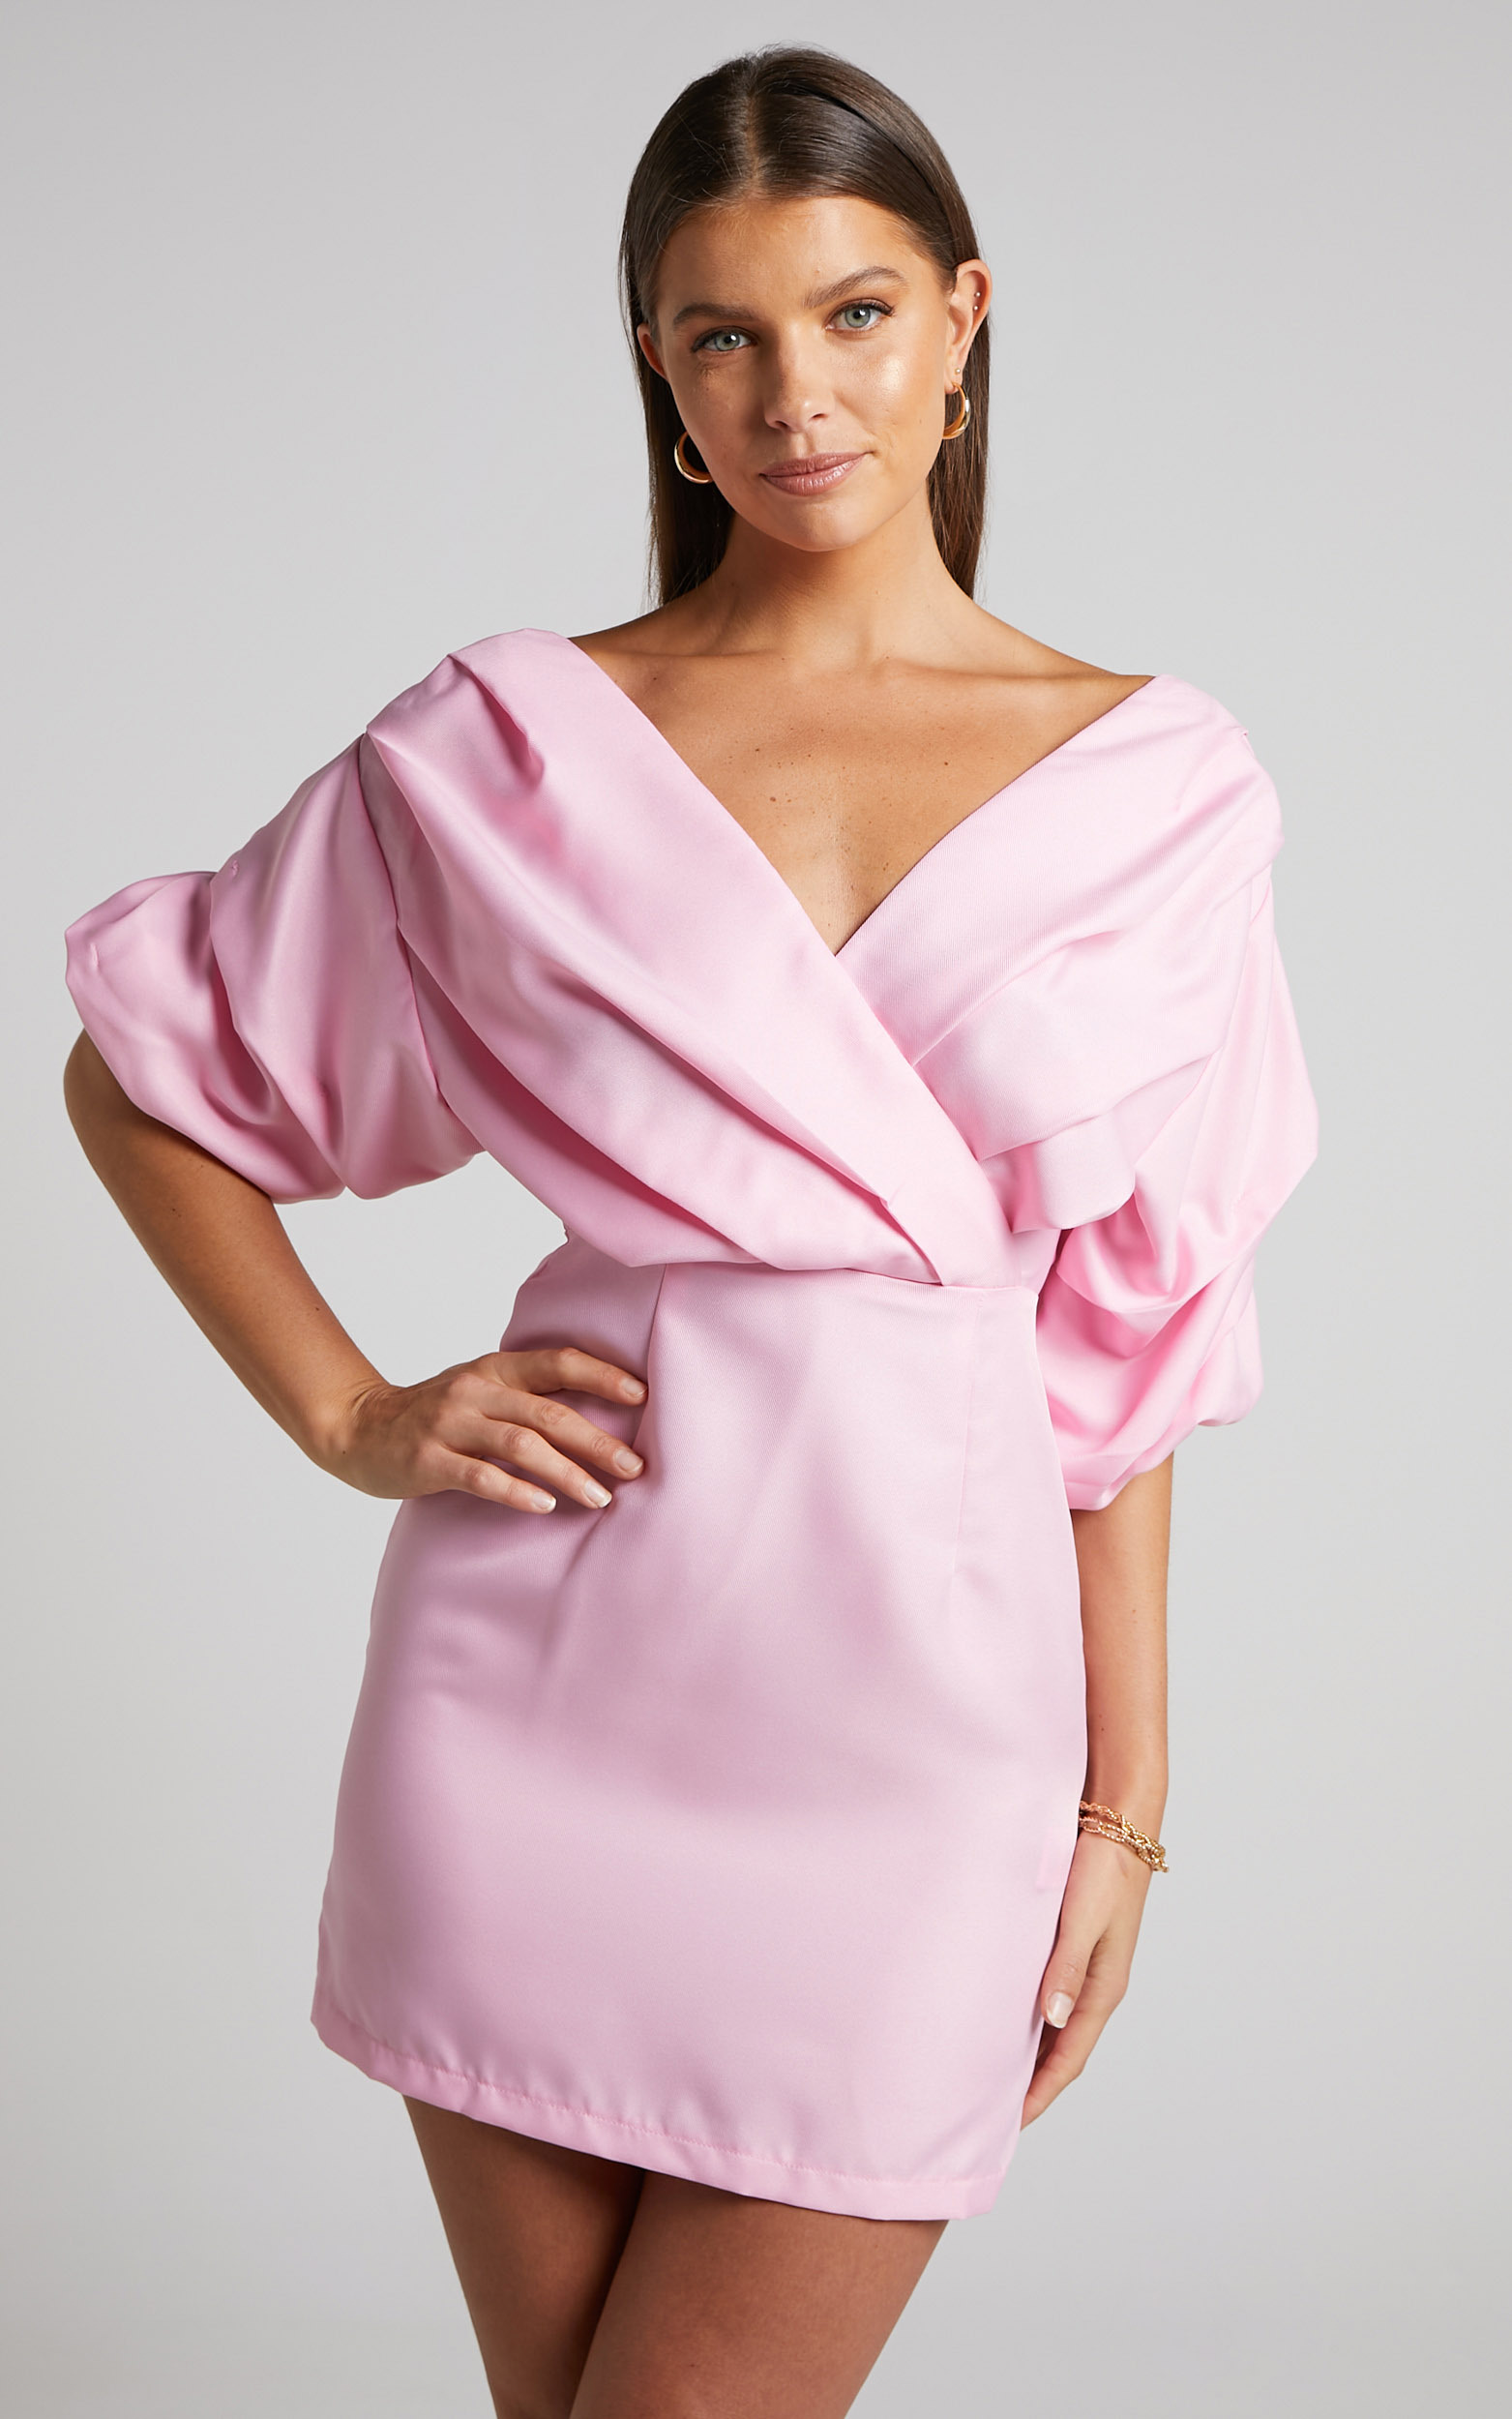 Anastasija Mini Dress - Off Shoulder V Neck Dress in Ice Pink - 06, PNK2, hi-res image number null